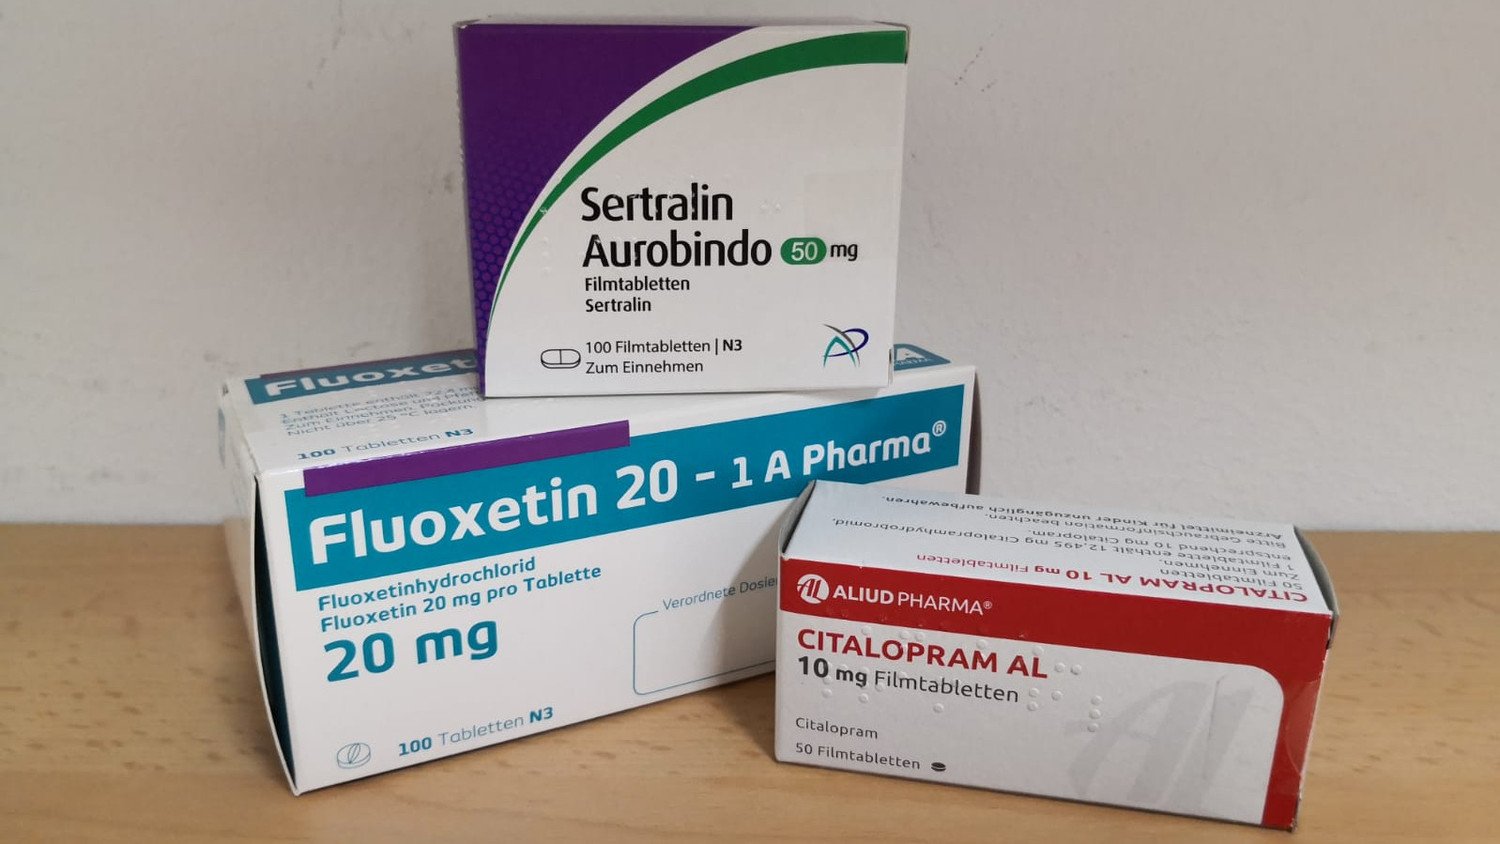 Bild mit Packungen von Sertralin, Fluoxetin, Citalopram